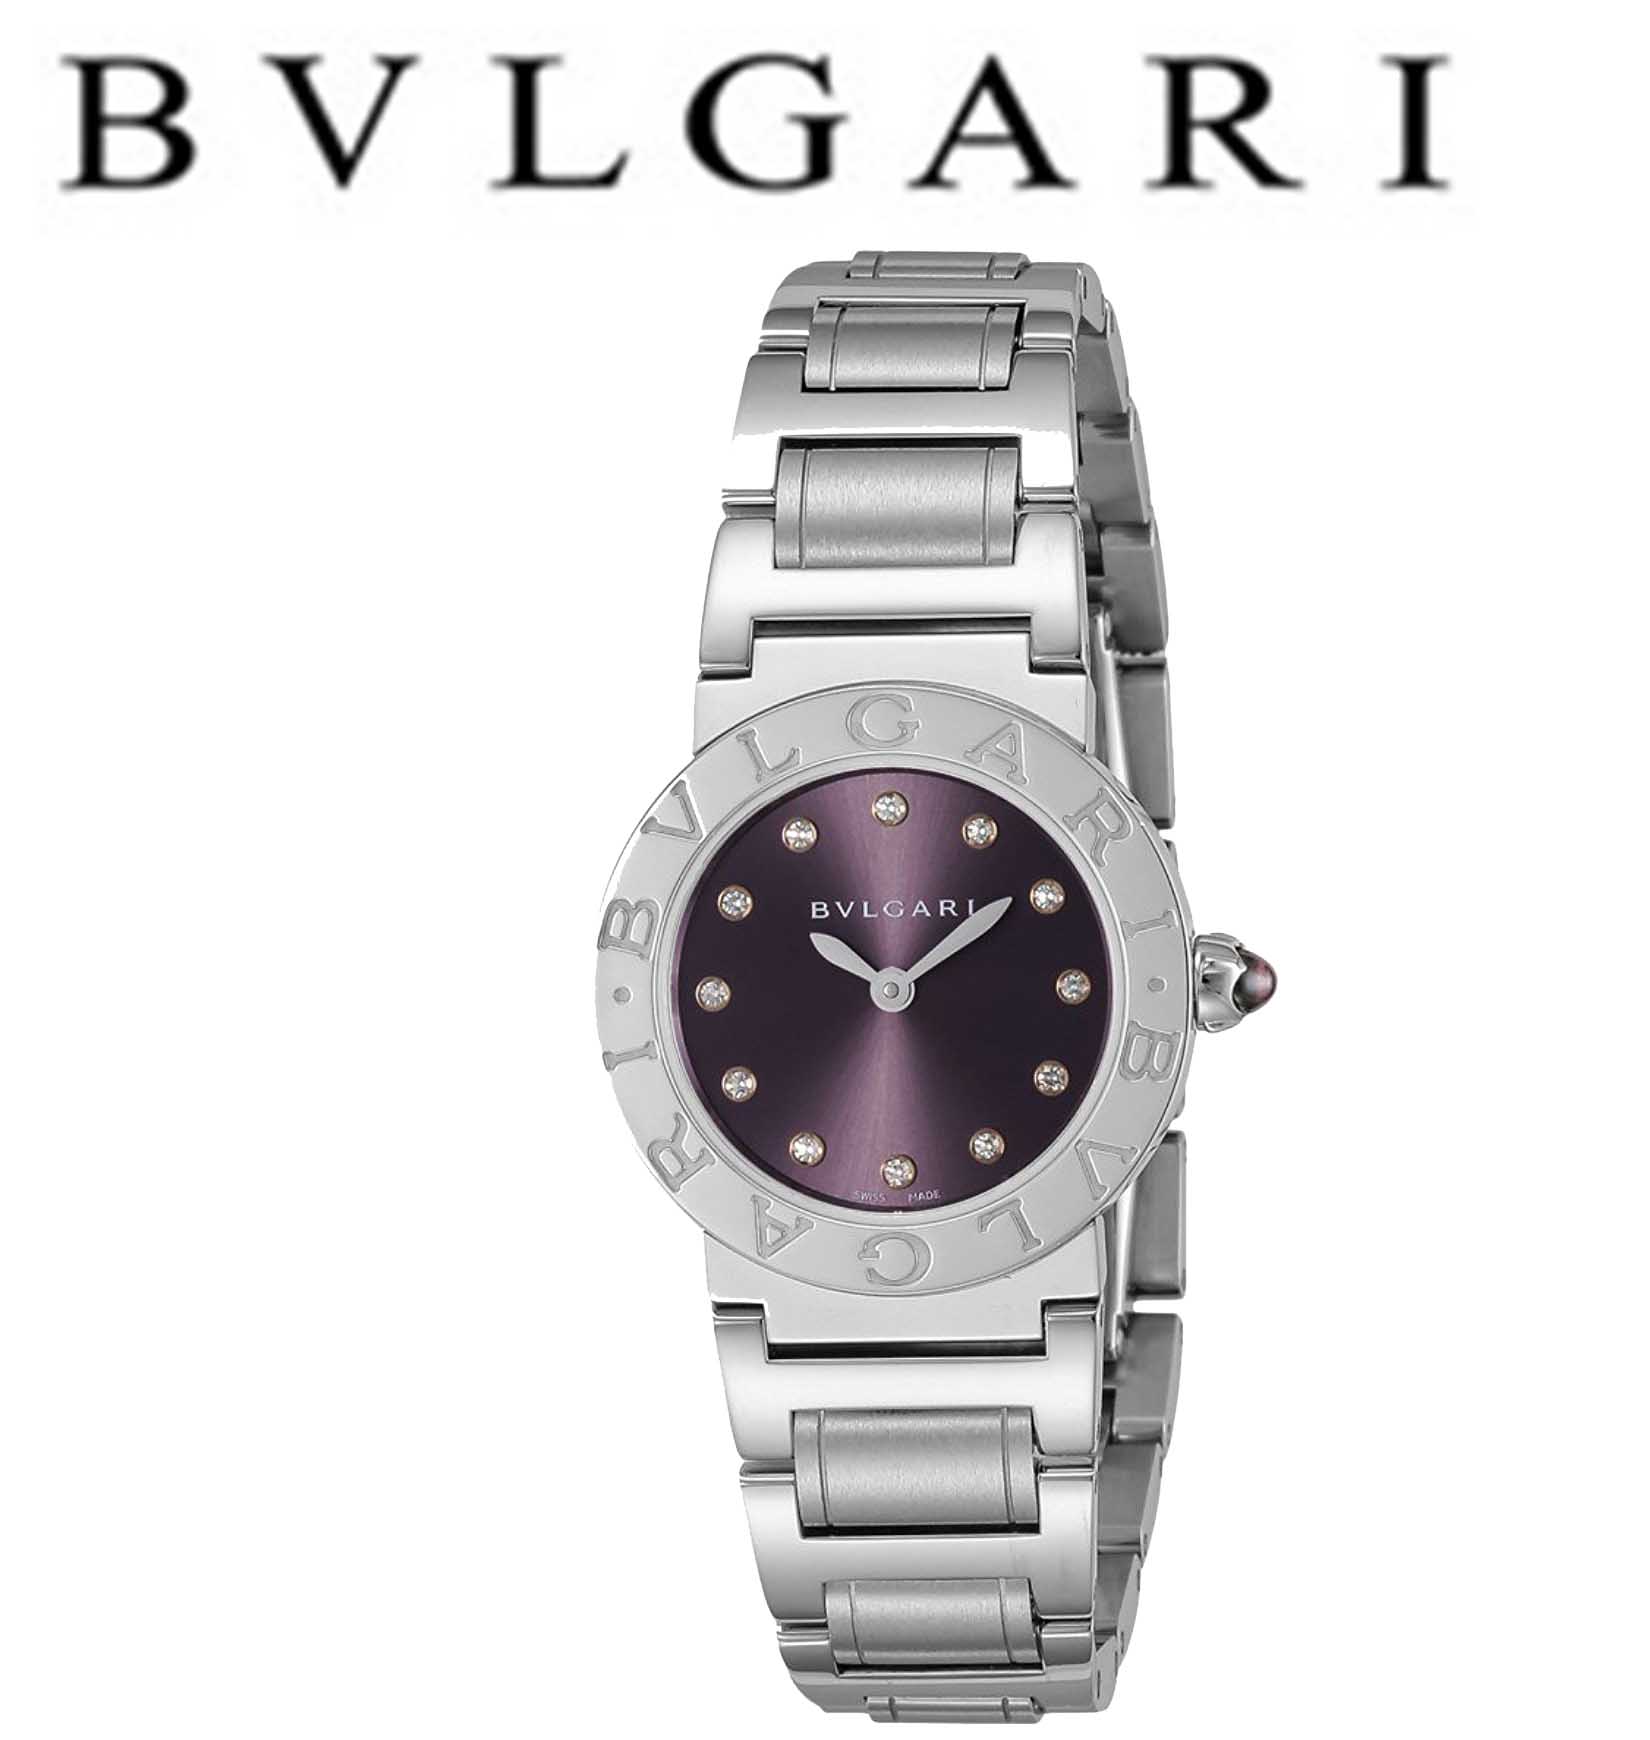 【BVLGARI】(ブルガリ) 腕時計 レディース パープル |開業・開店・移転祝いにWebカタログギフト「オフィスギフト」